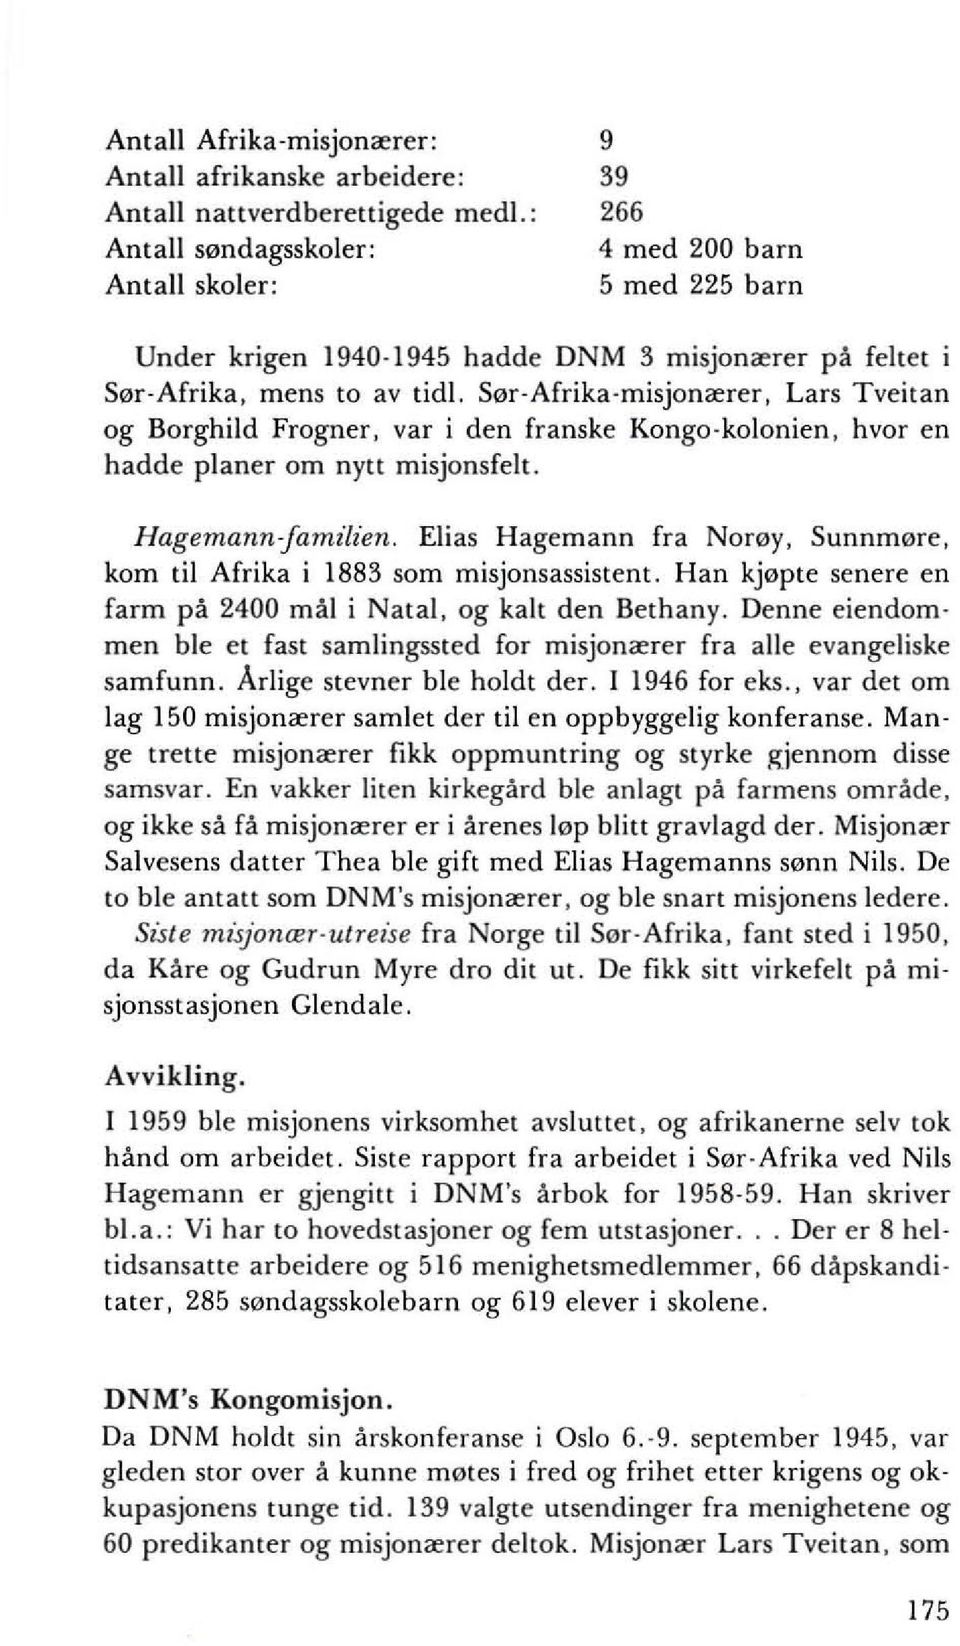 Sor-Afrika-misjonaerer, Lars Tveitan og Borghild Frogner, var i den franske Kongo-kolonien, hvor en hadde planer om nytt misjonsfelt. Hagemannjamilien.